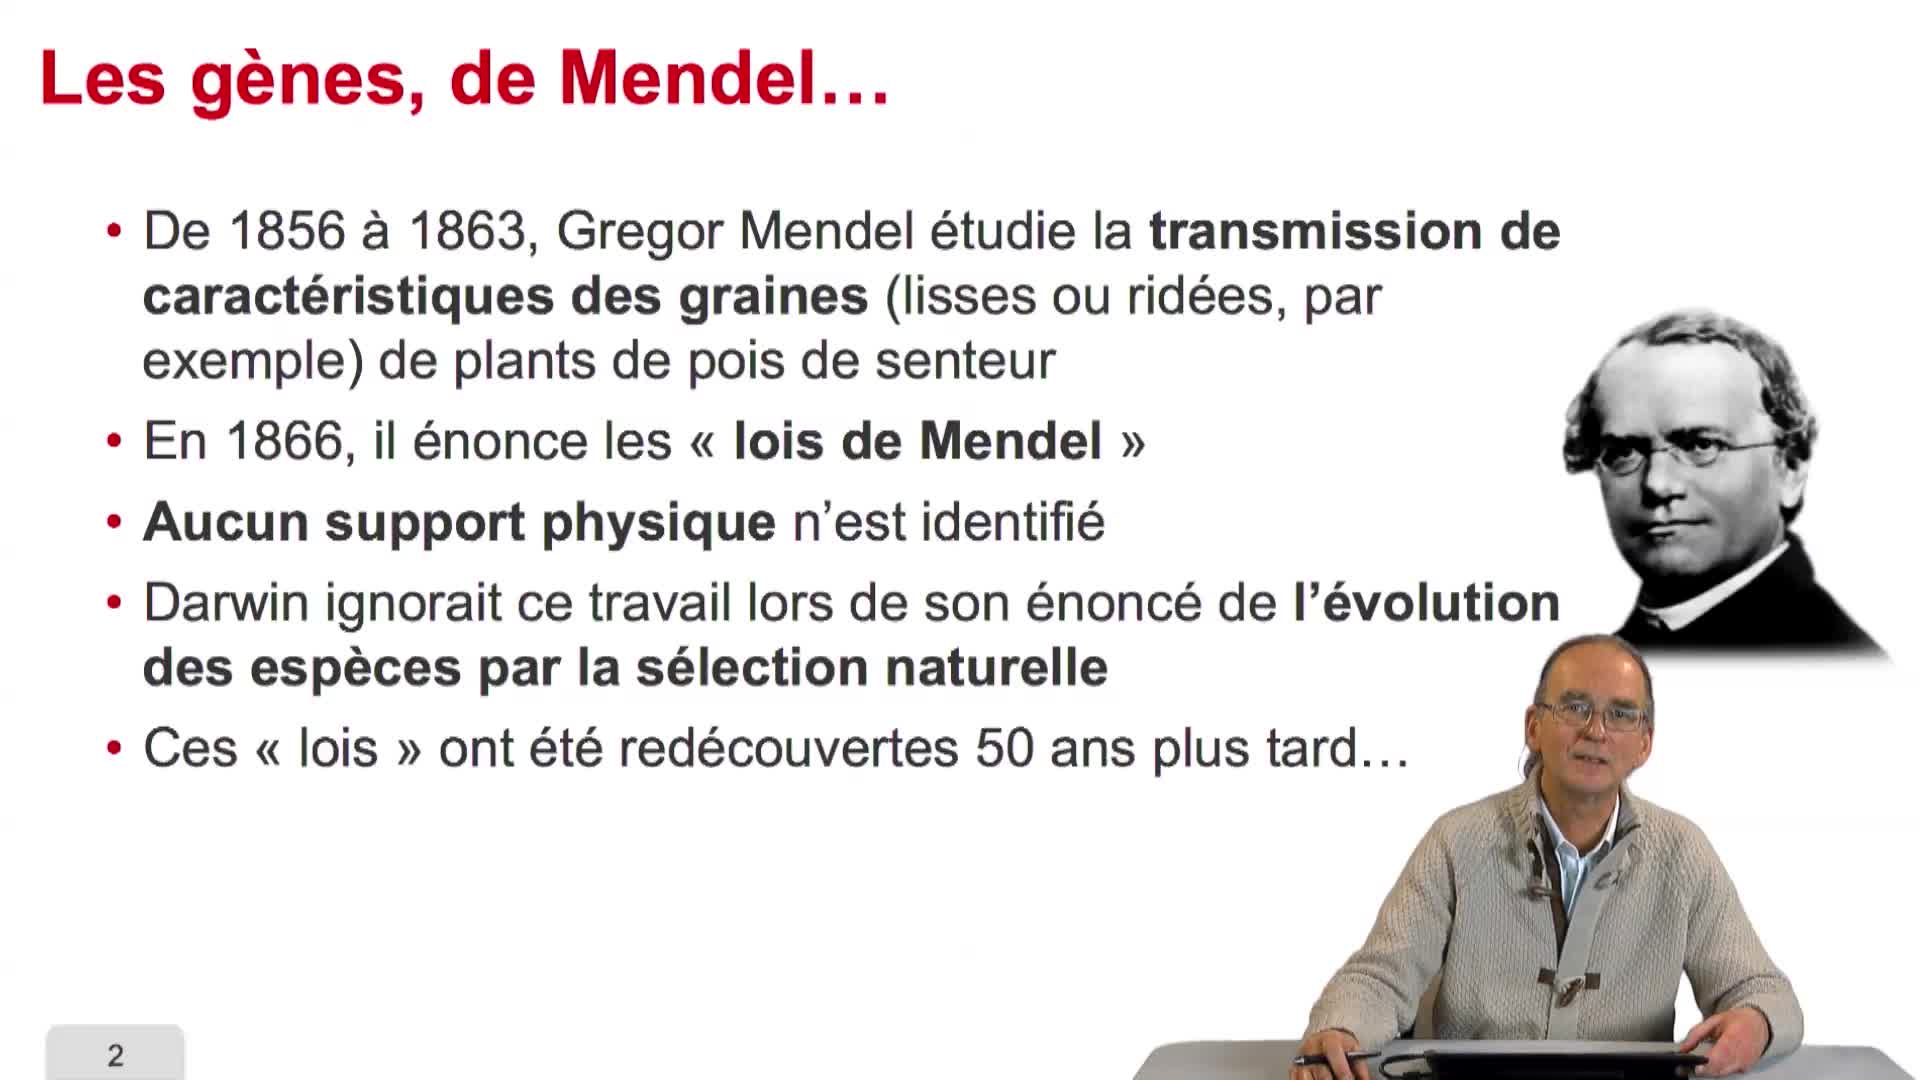 2.2. Les gènes, de Mendel à la biologie moléculaire